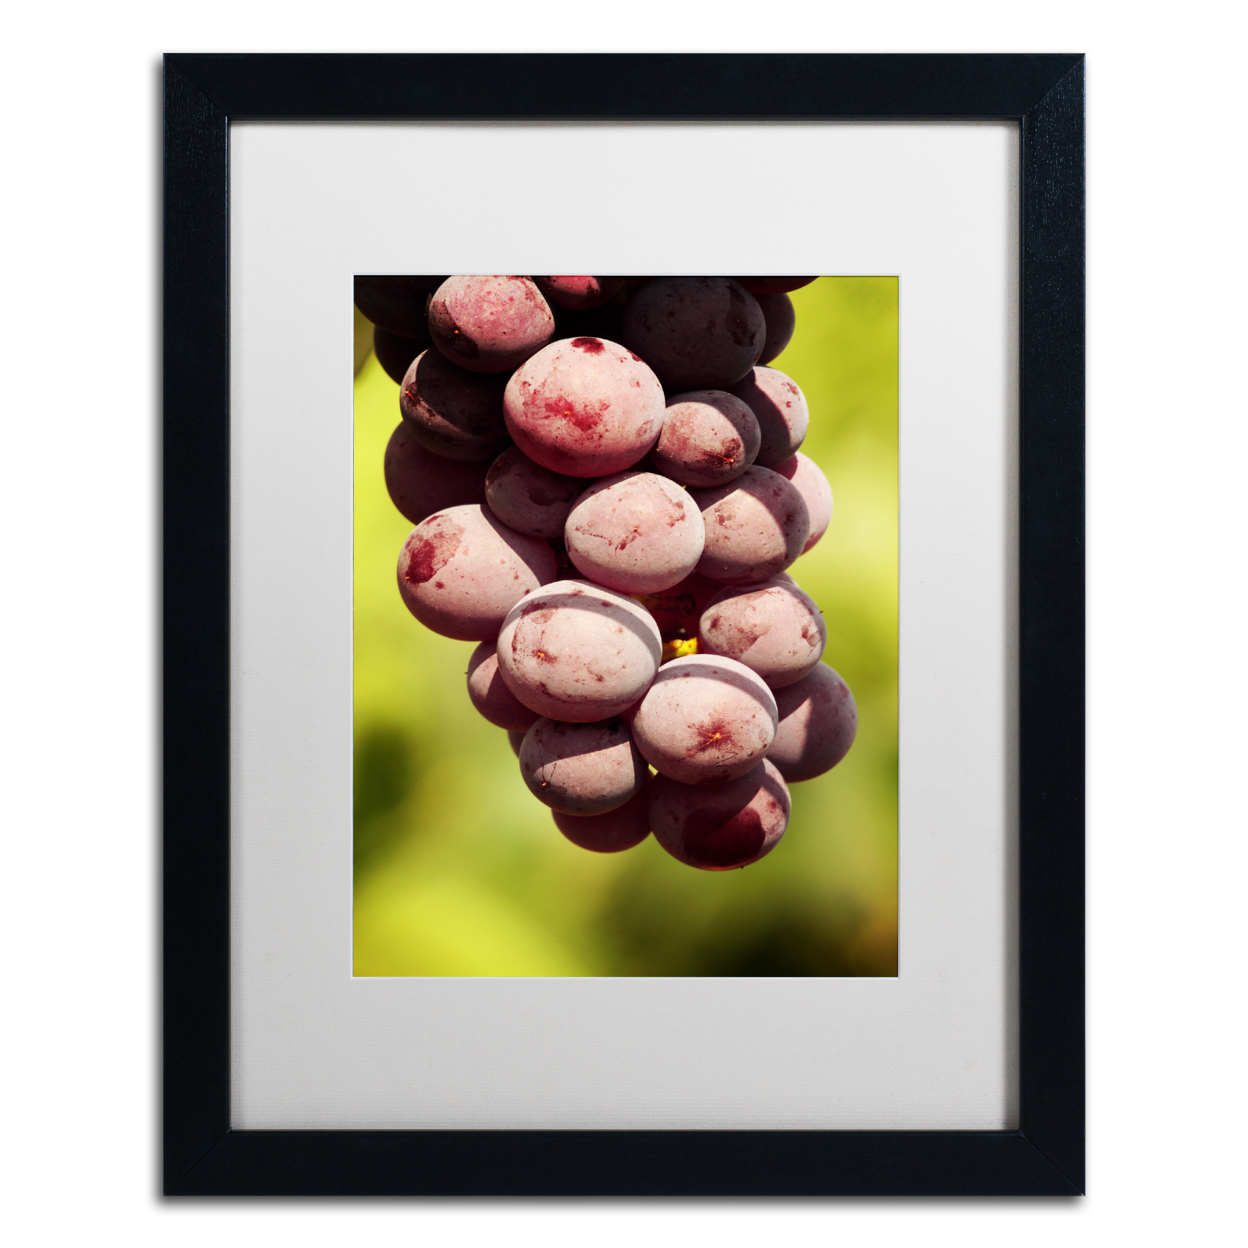 Jason Shaffer 'Homegrown Grapes' Black Wooden Framed Art 18 X 22 Inches